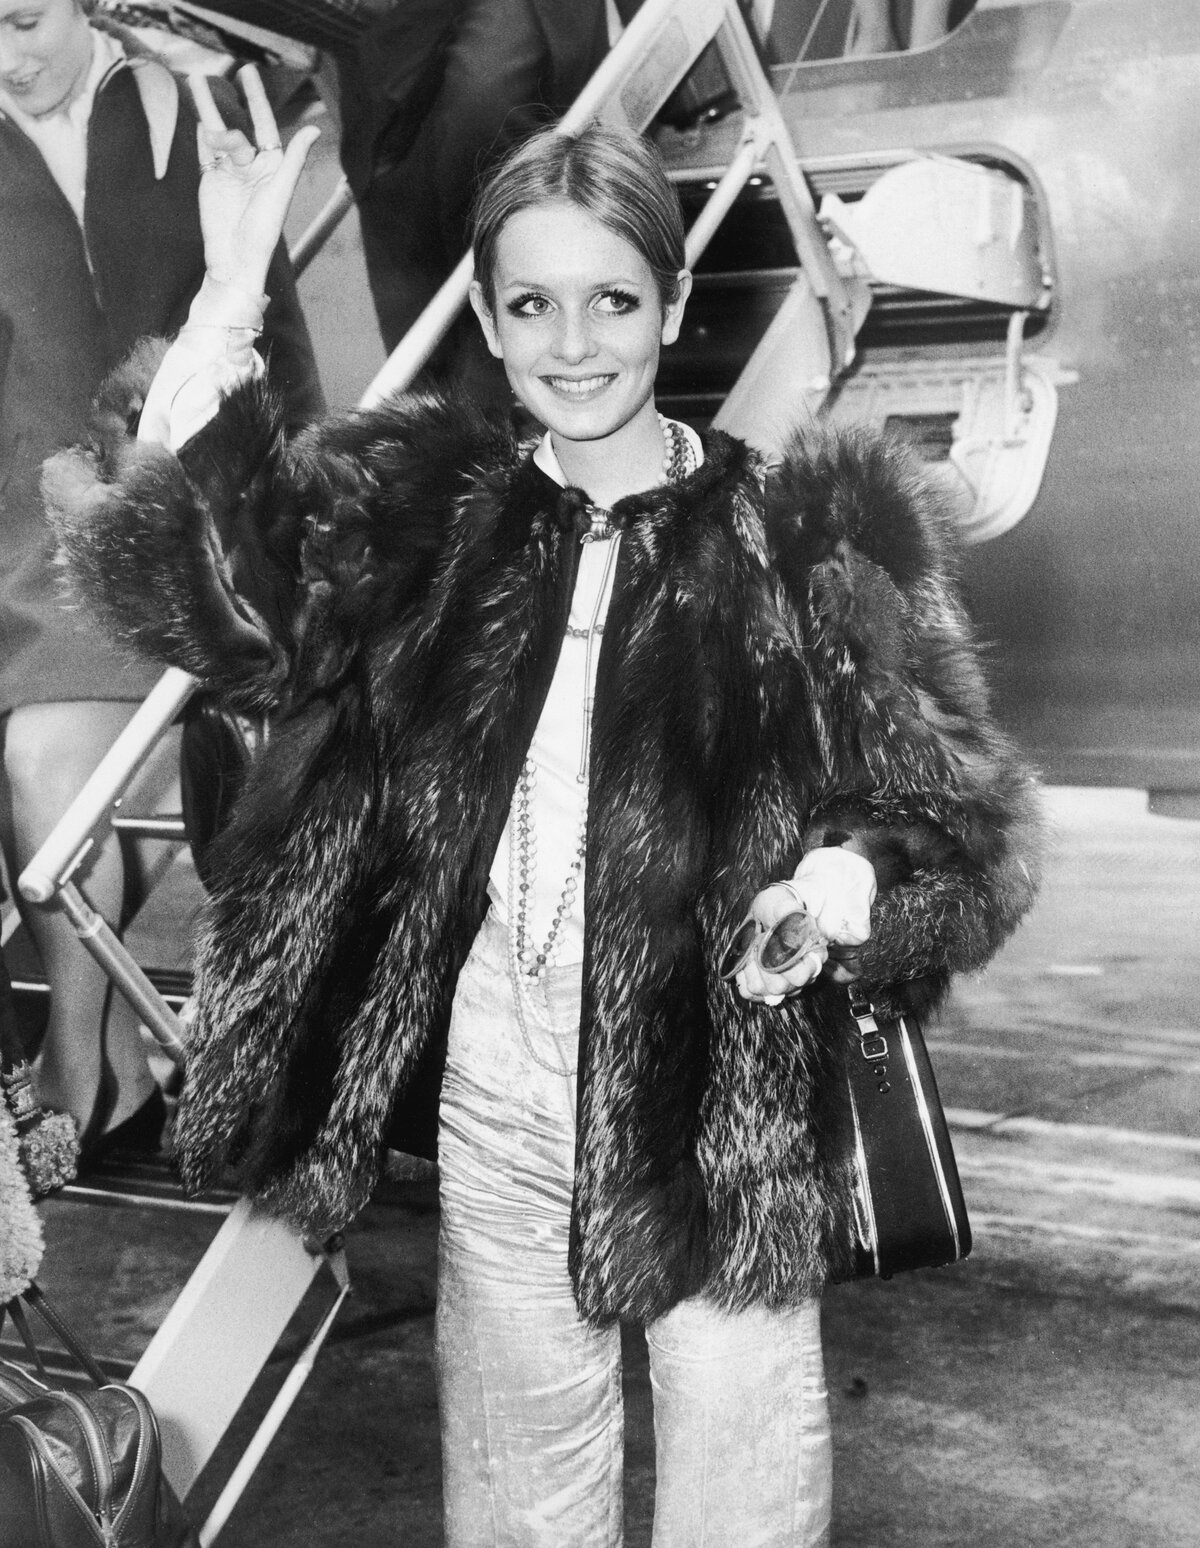 Twiggy brit divatmodell érkezik vissza a Heathrow repülőtérre egy japán út után, 1967. november 9. (Fotó: Dennis Oulds/Central Press/Hulton Archive/Getty Images)